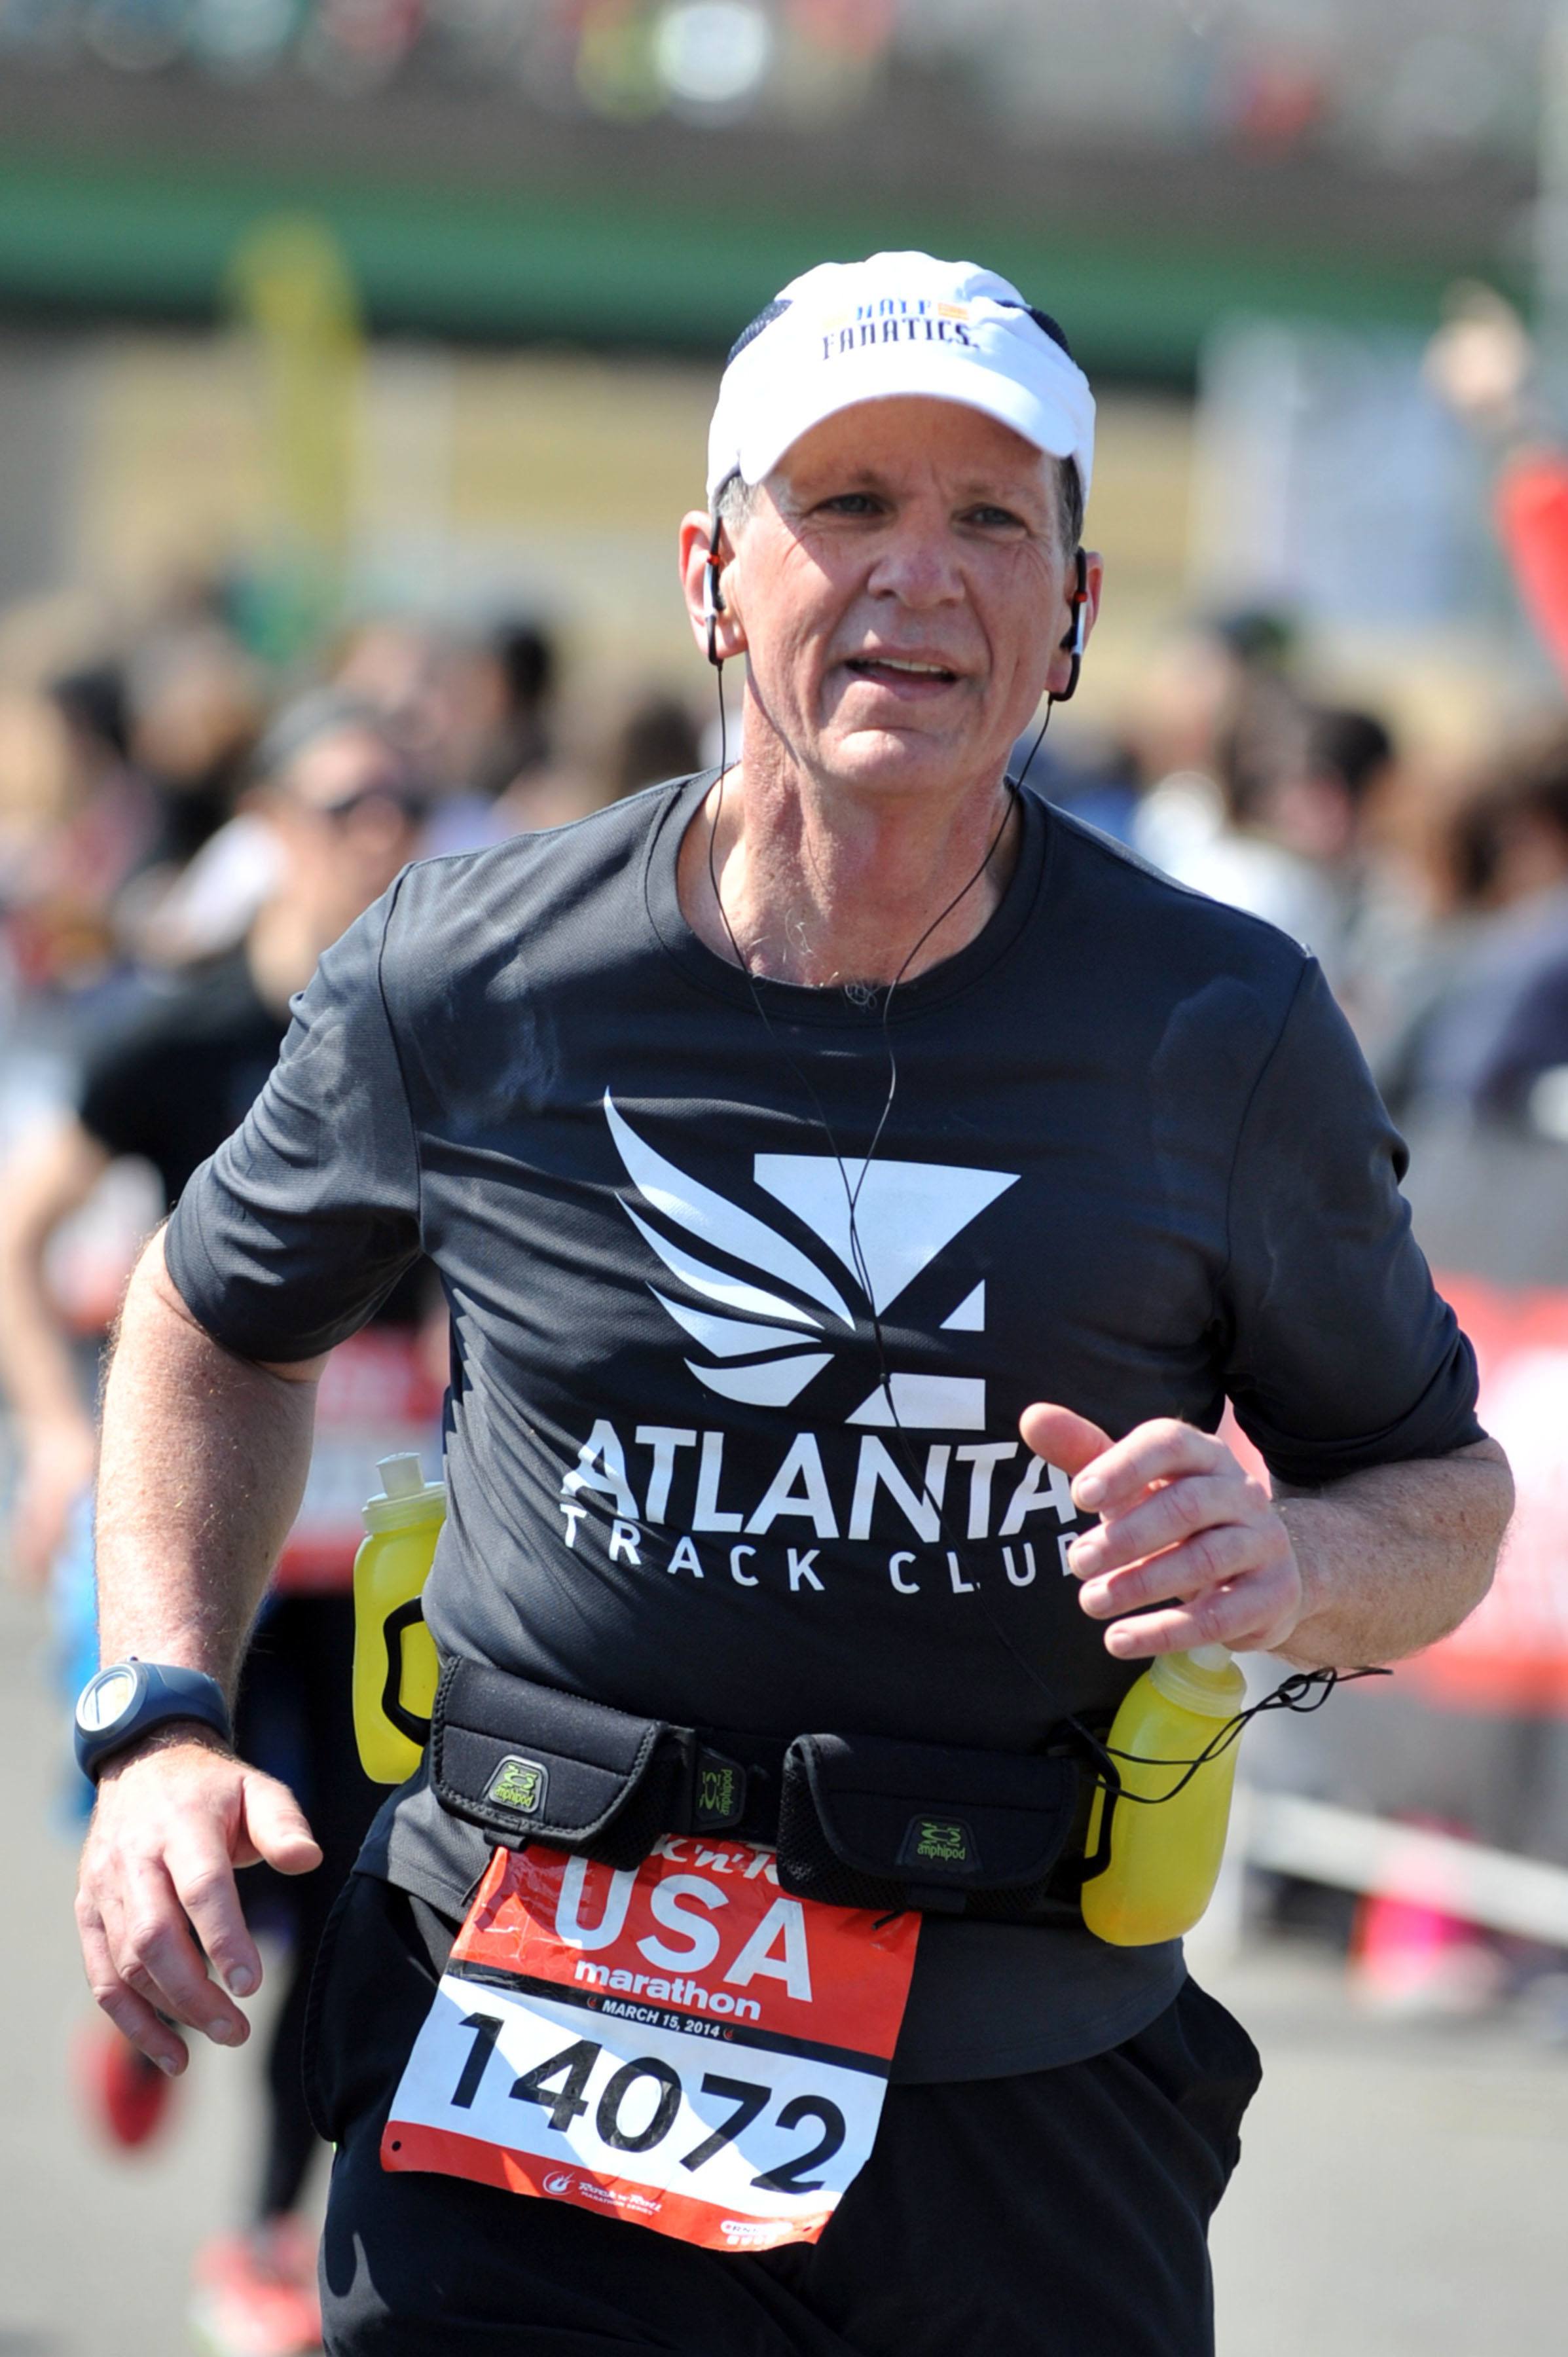 USA Marathon Runner Dave Bloomquist